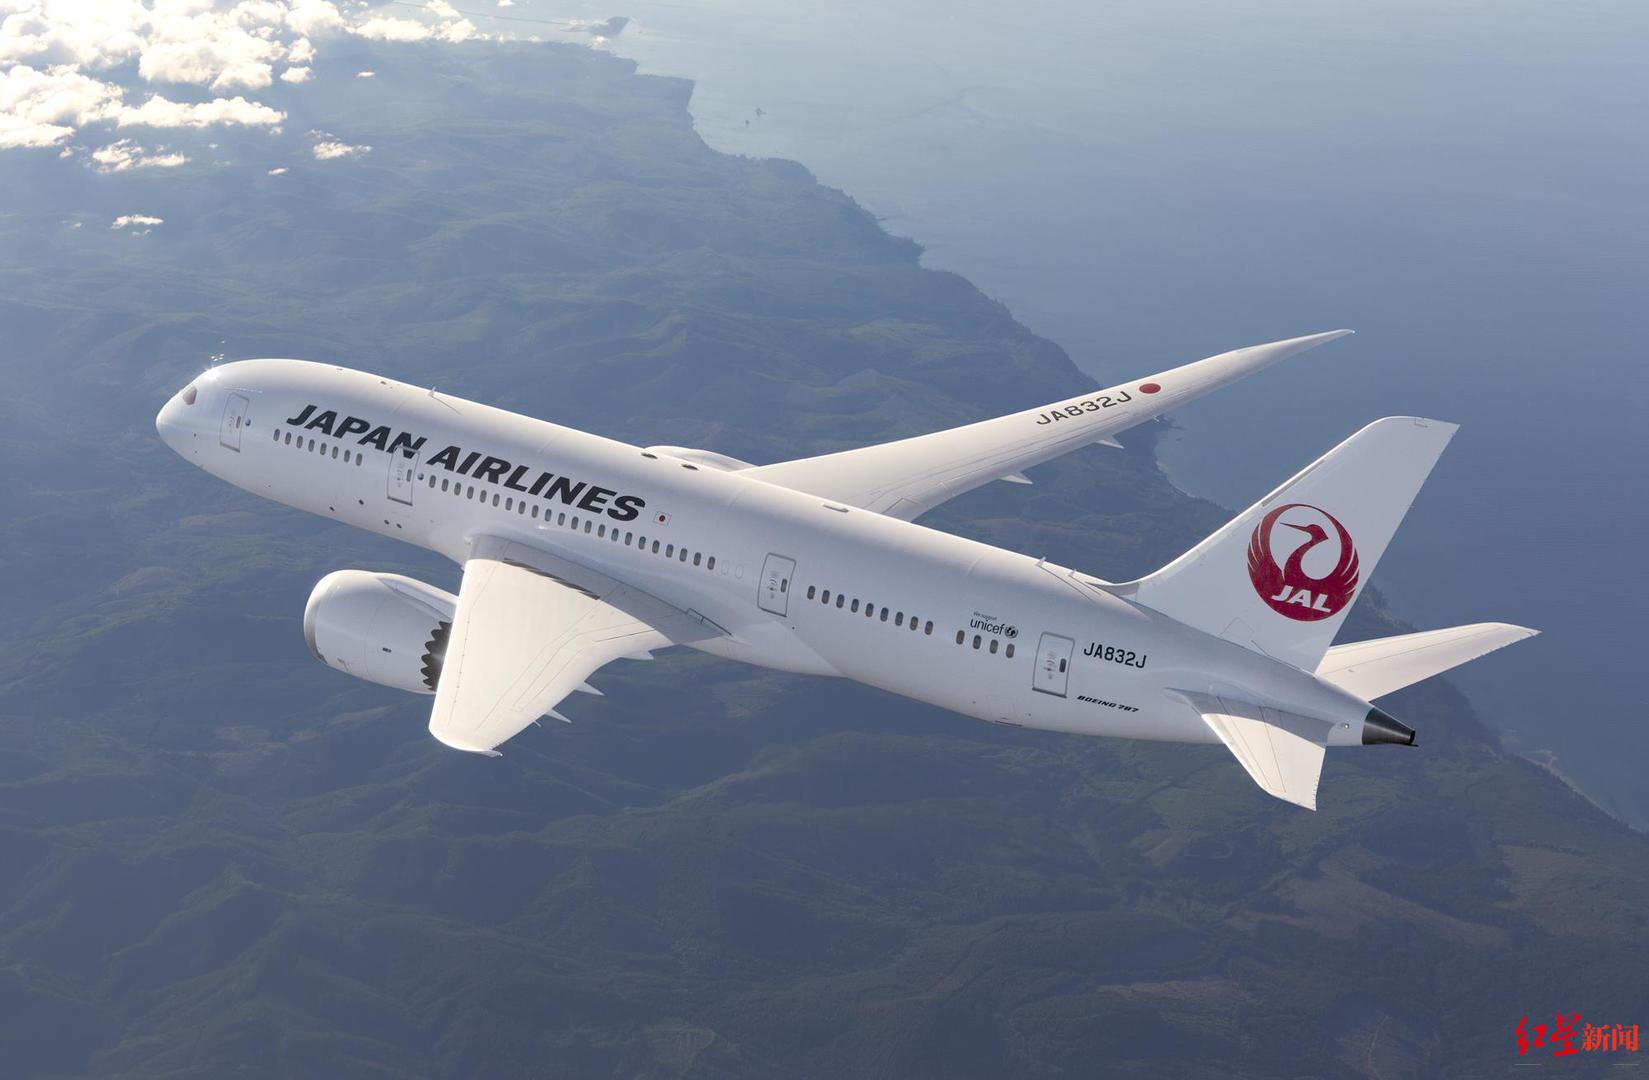 ▲日本航空公司采用“极地航线”往返欧洲和日本